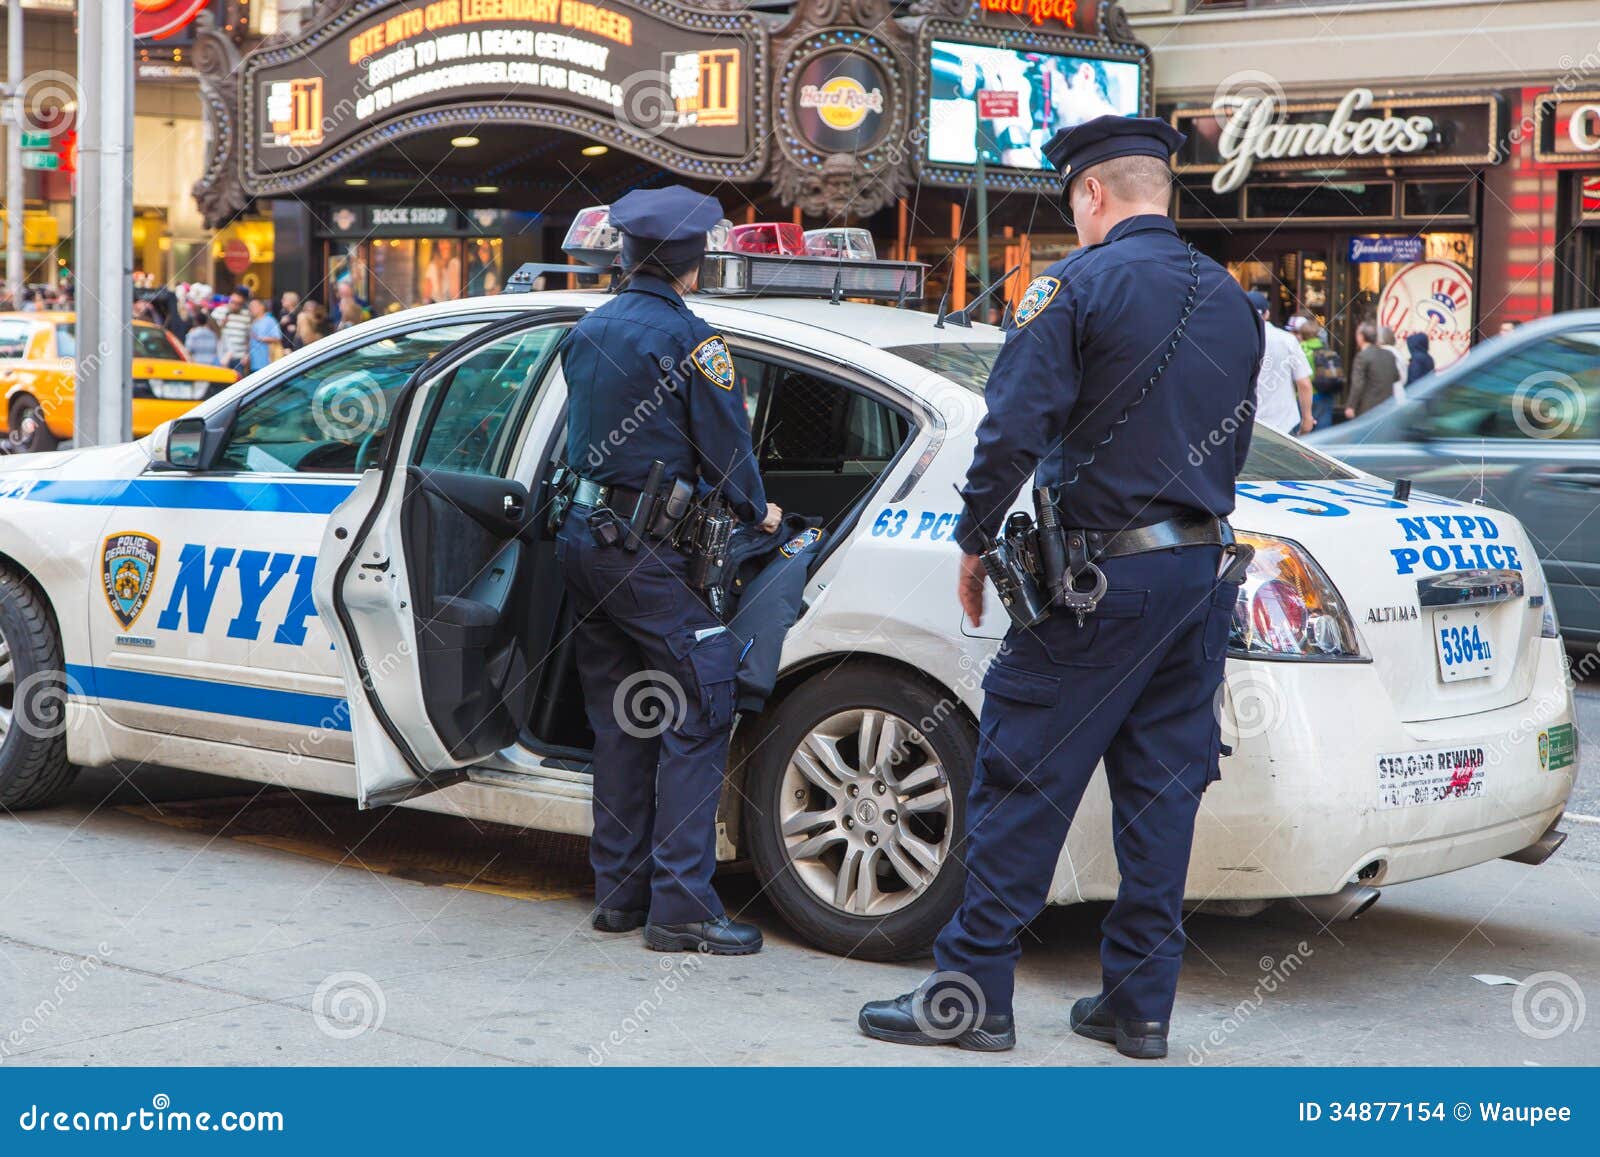 6000警察护航纽约跨年 连警校新人都上阵了 - 时尚新闻 - 温哥华天空 - Vansky